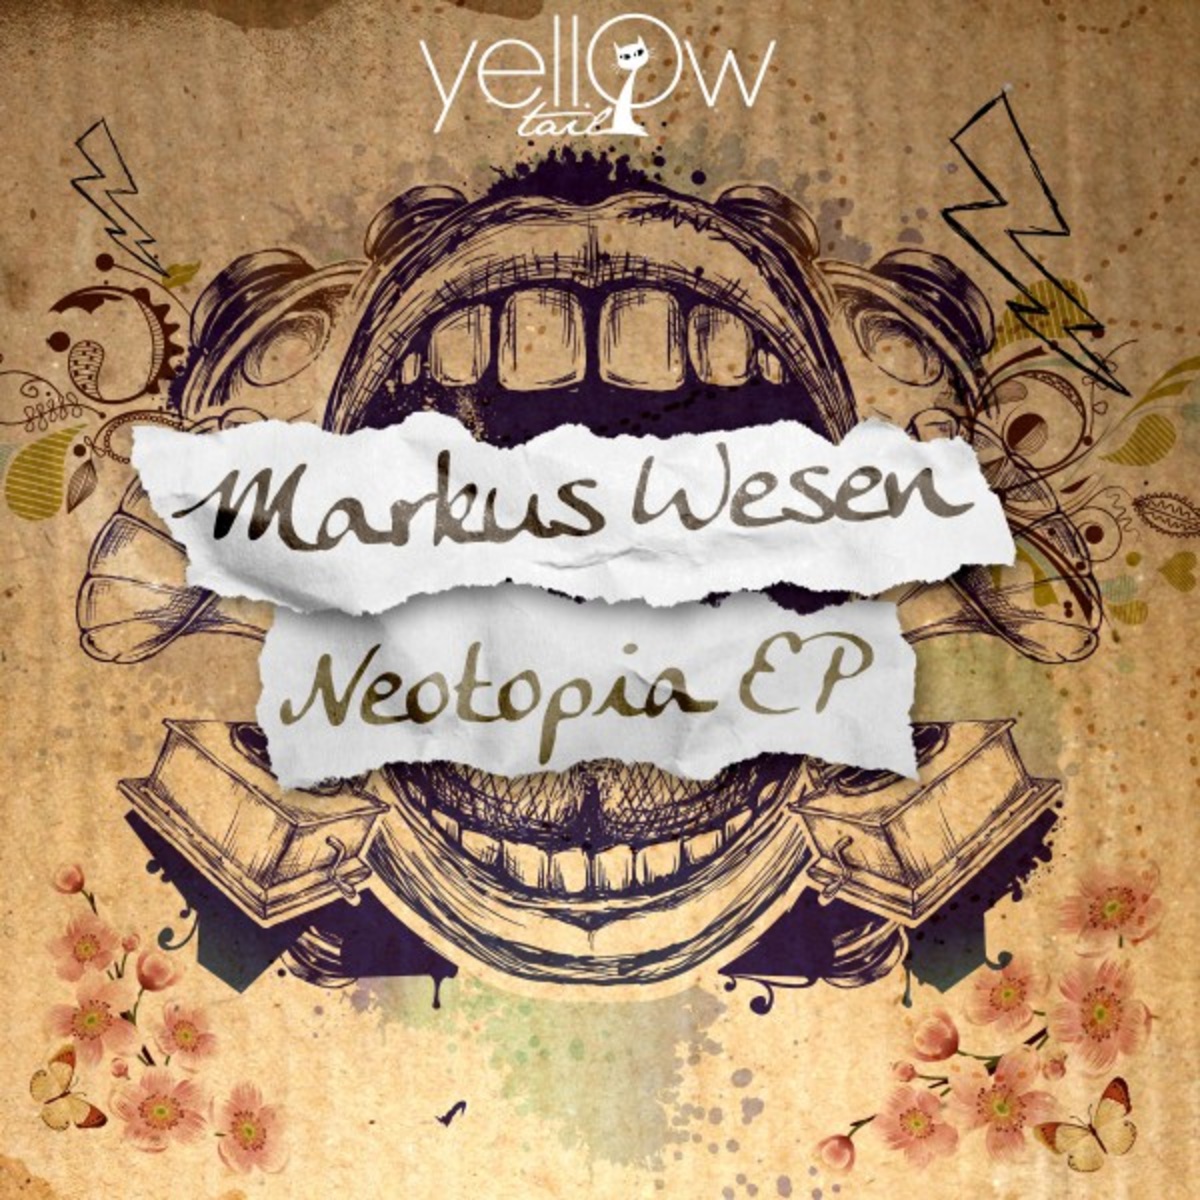 Markus Wesen - Neotopia EP / Yellow Tail